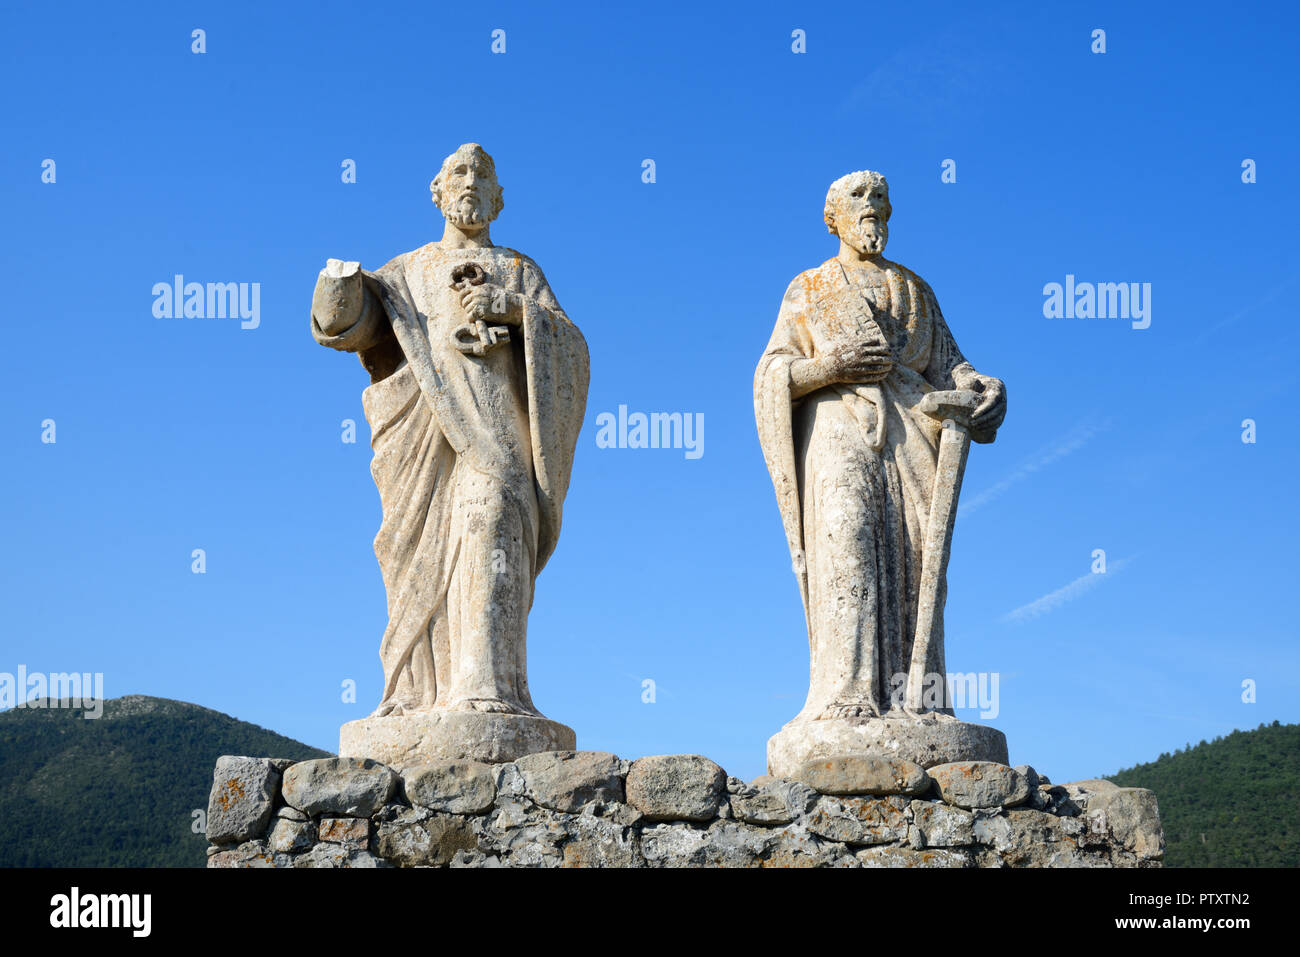 Sculptures or Statues of Saint Peter & Saint Paul (1891) above the town of Saint André-les-Alpes Alpes-de-Haute-Provence Provence France Stock Photo